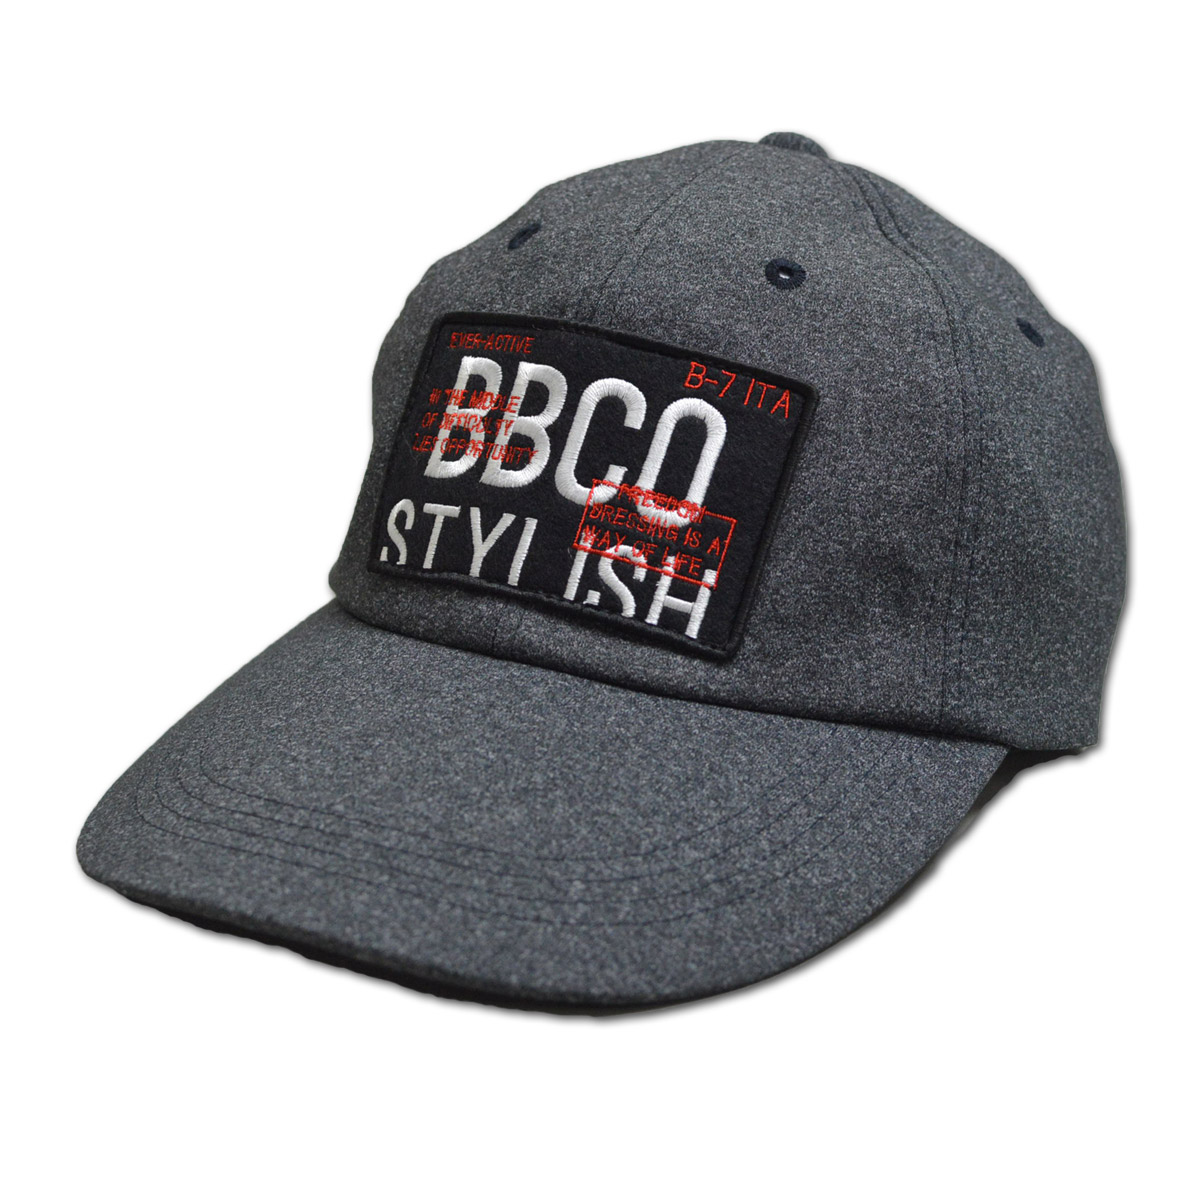 BBCO ビビコ キャップ帽子 メンズ 黒 白 紺 M L LL 25-0101-01